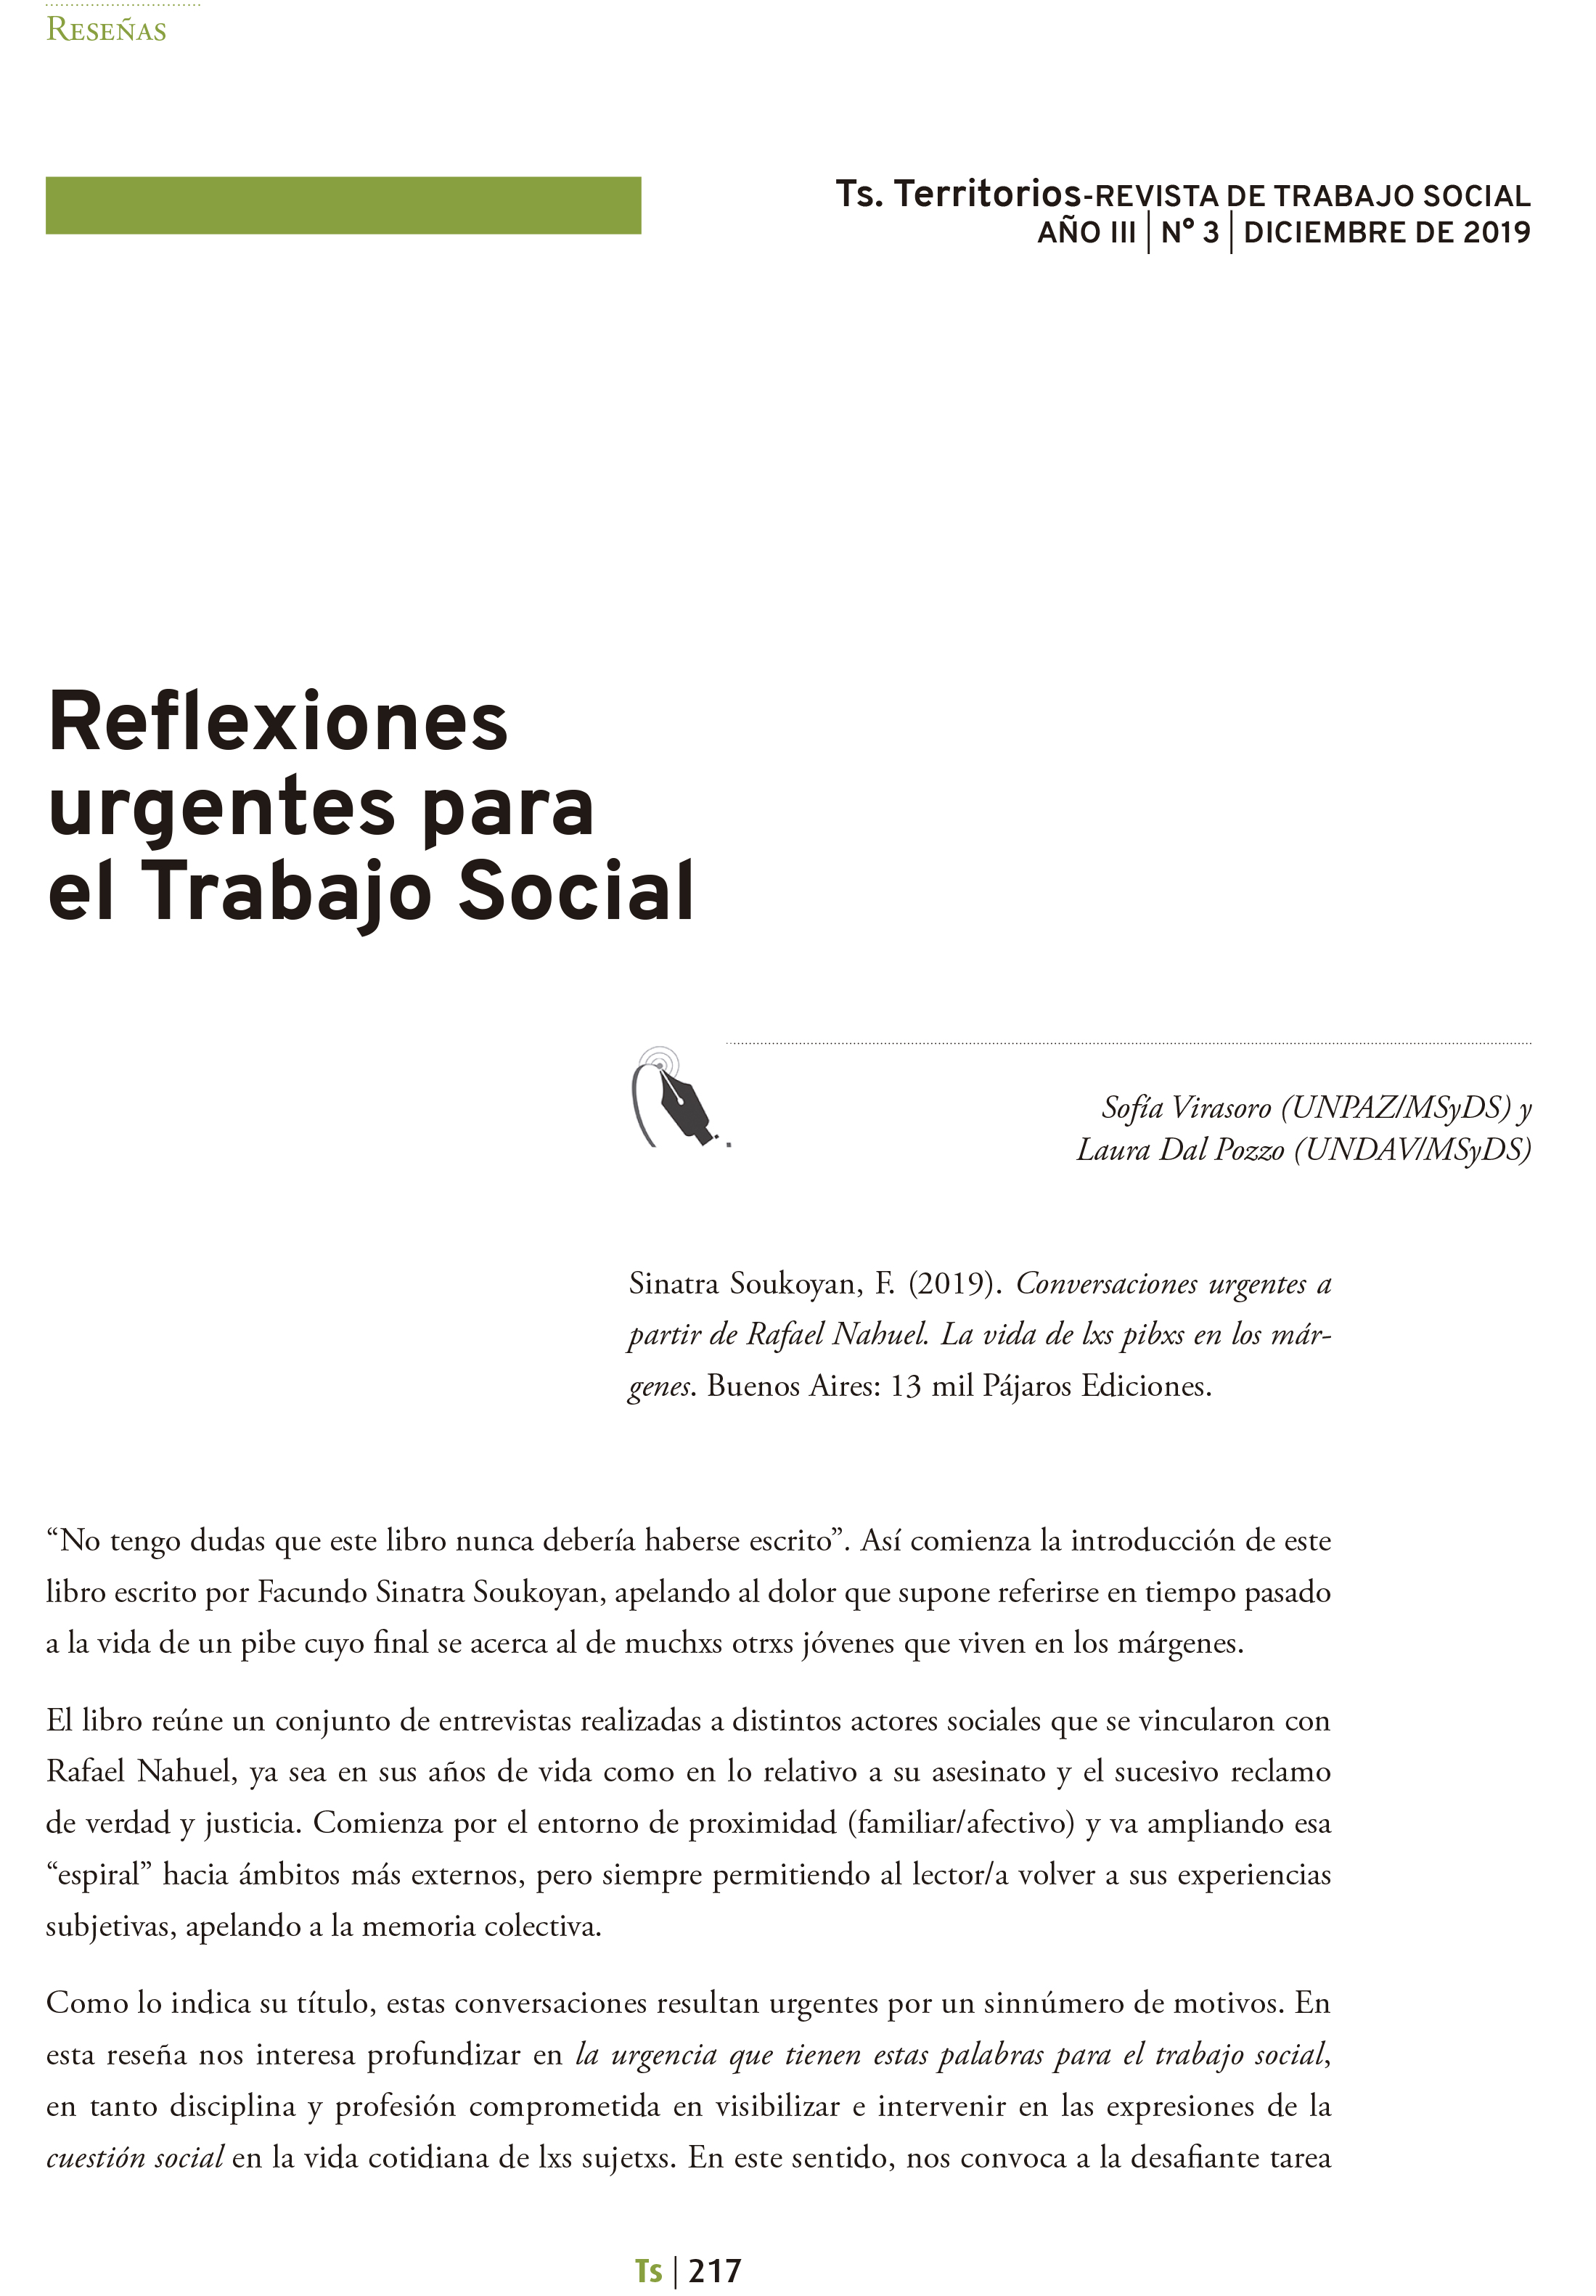 Reﬂexiones urgentes para el Trabajo Social | Ts. Territorios-REVISTA DE  TRABAJO SOCIAL